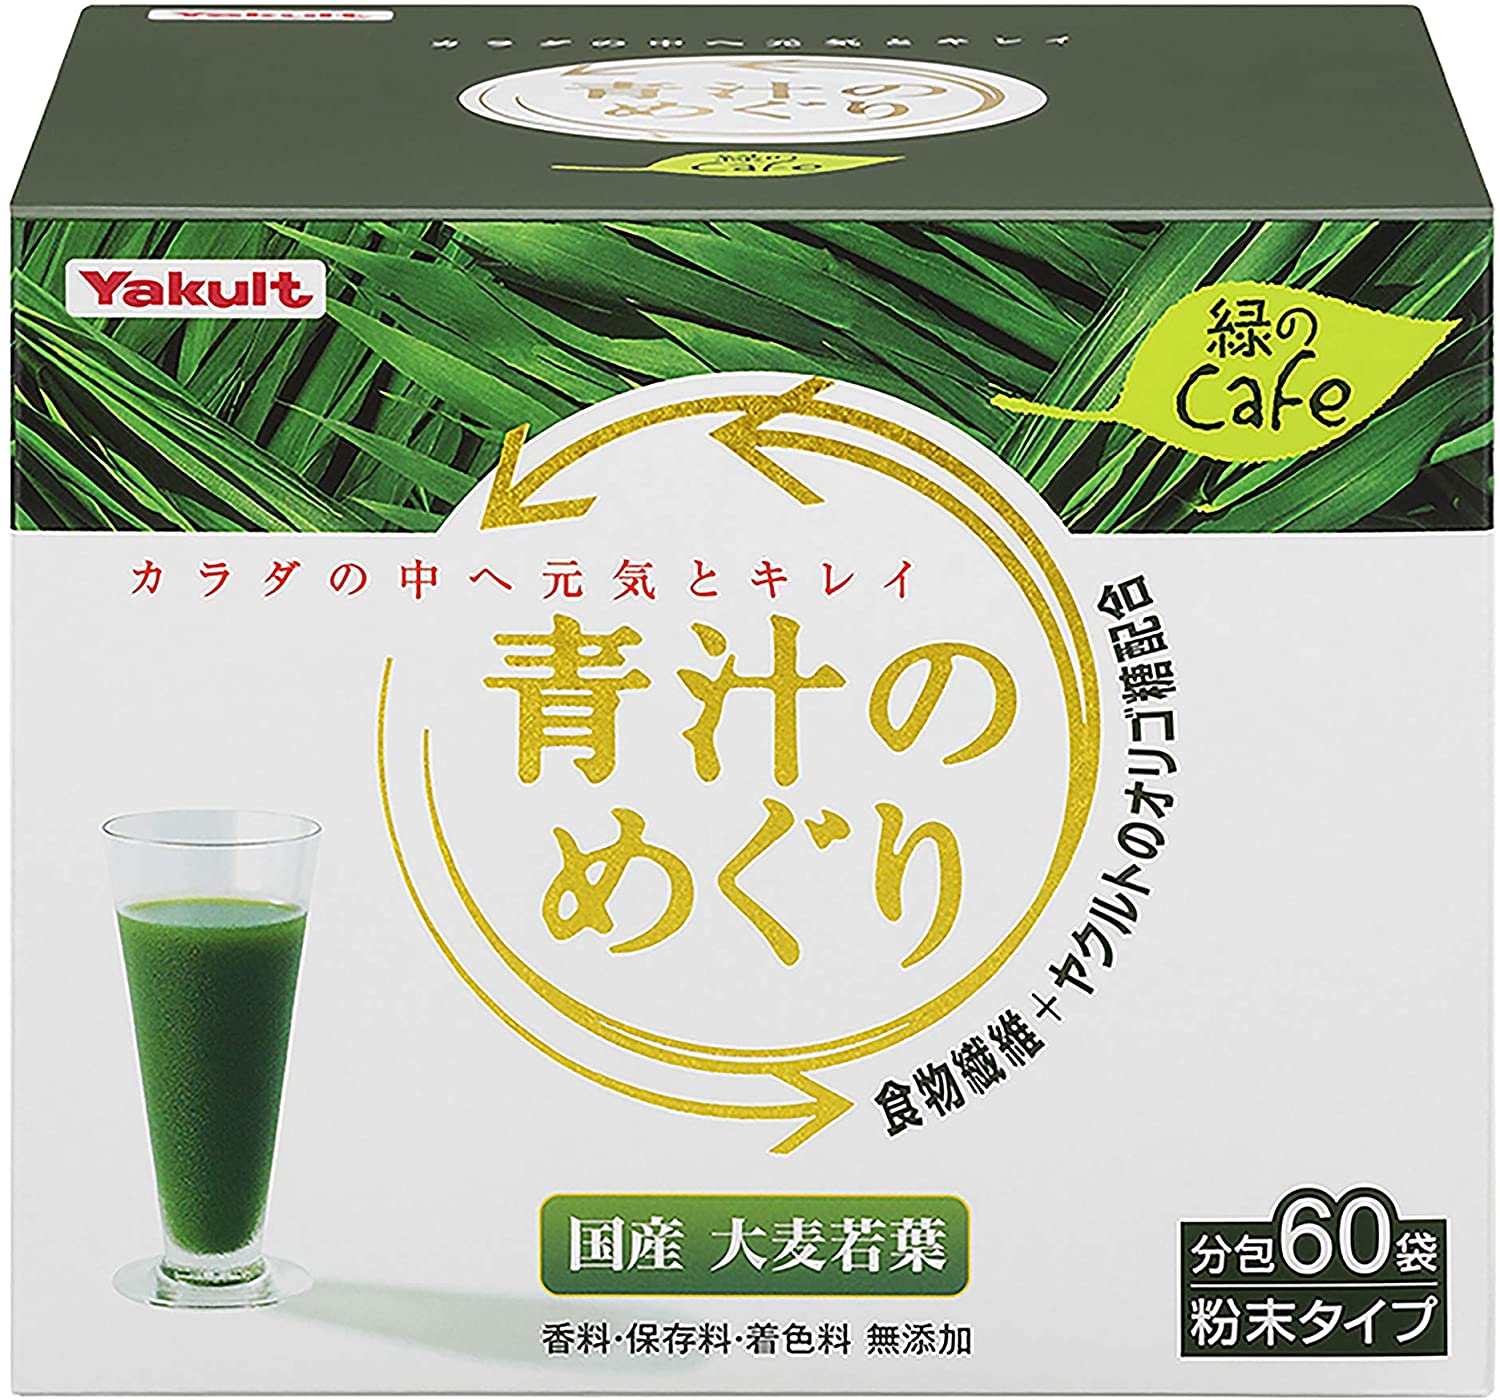 [Amazon限定ブランド]青汁のめぐり 緑のCａｆｅ(ミドリノカフェ) 450g (7.5g×60袋)10個